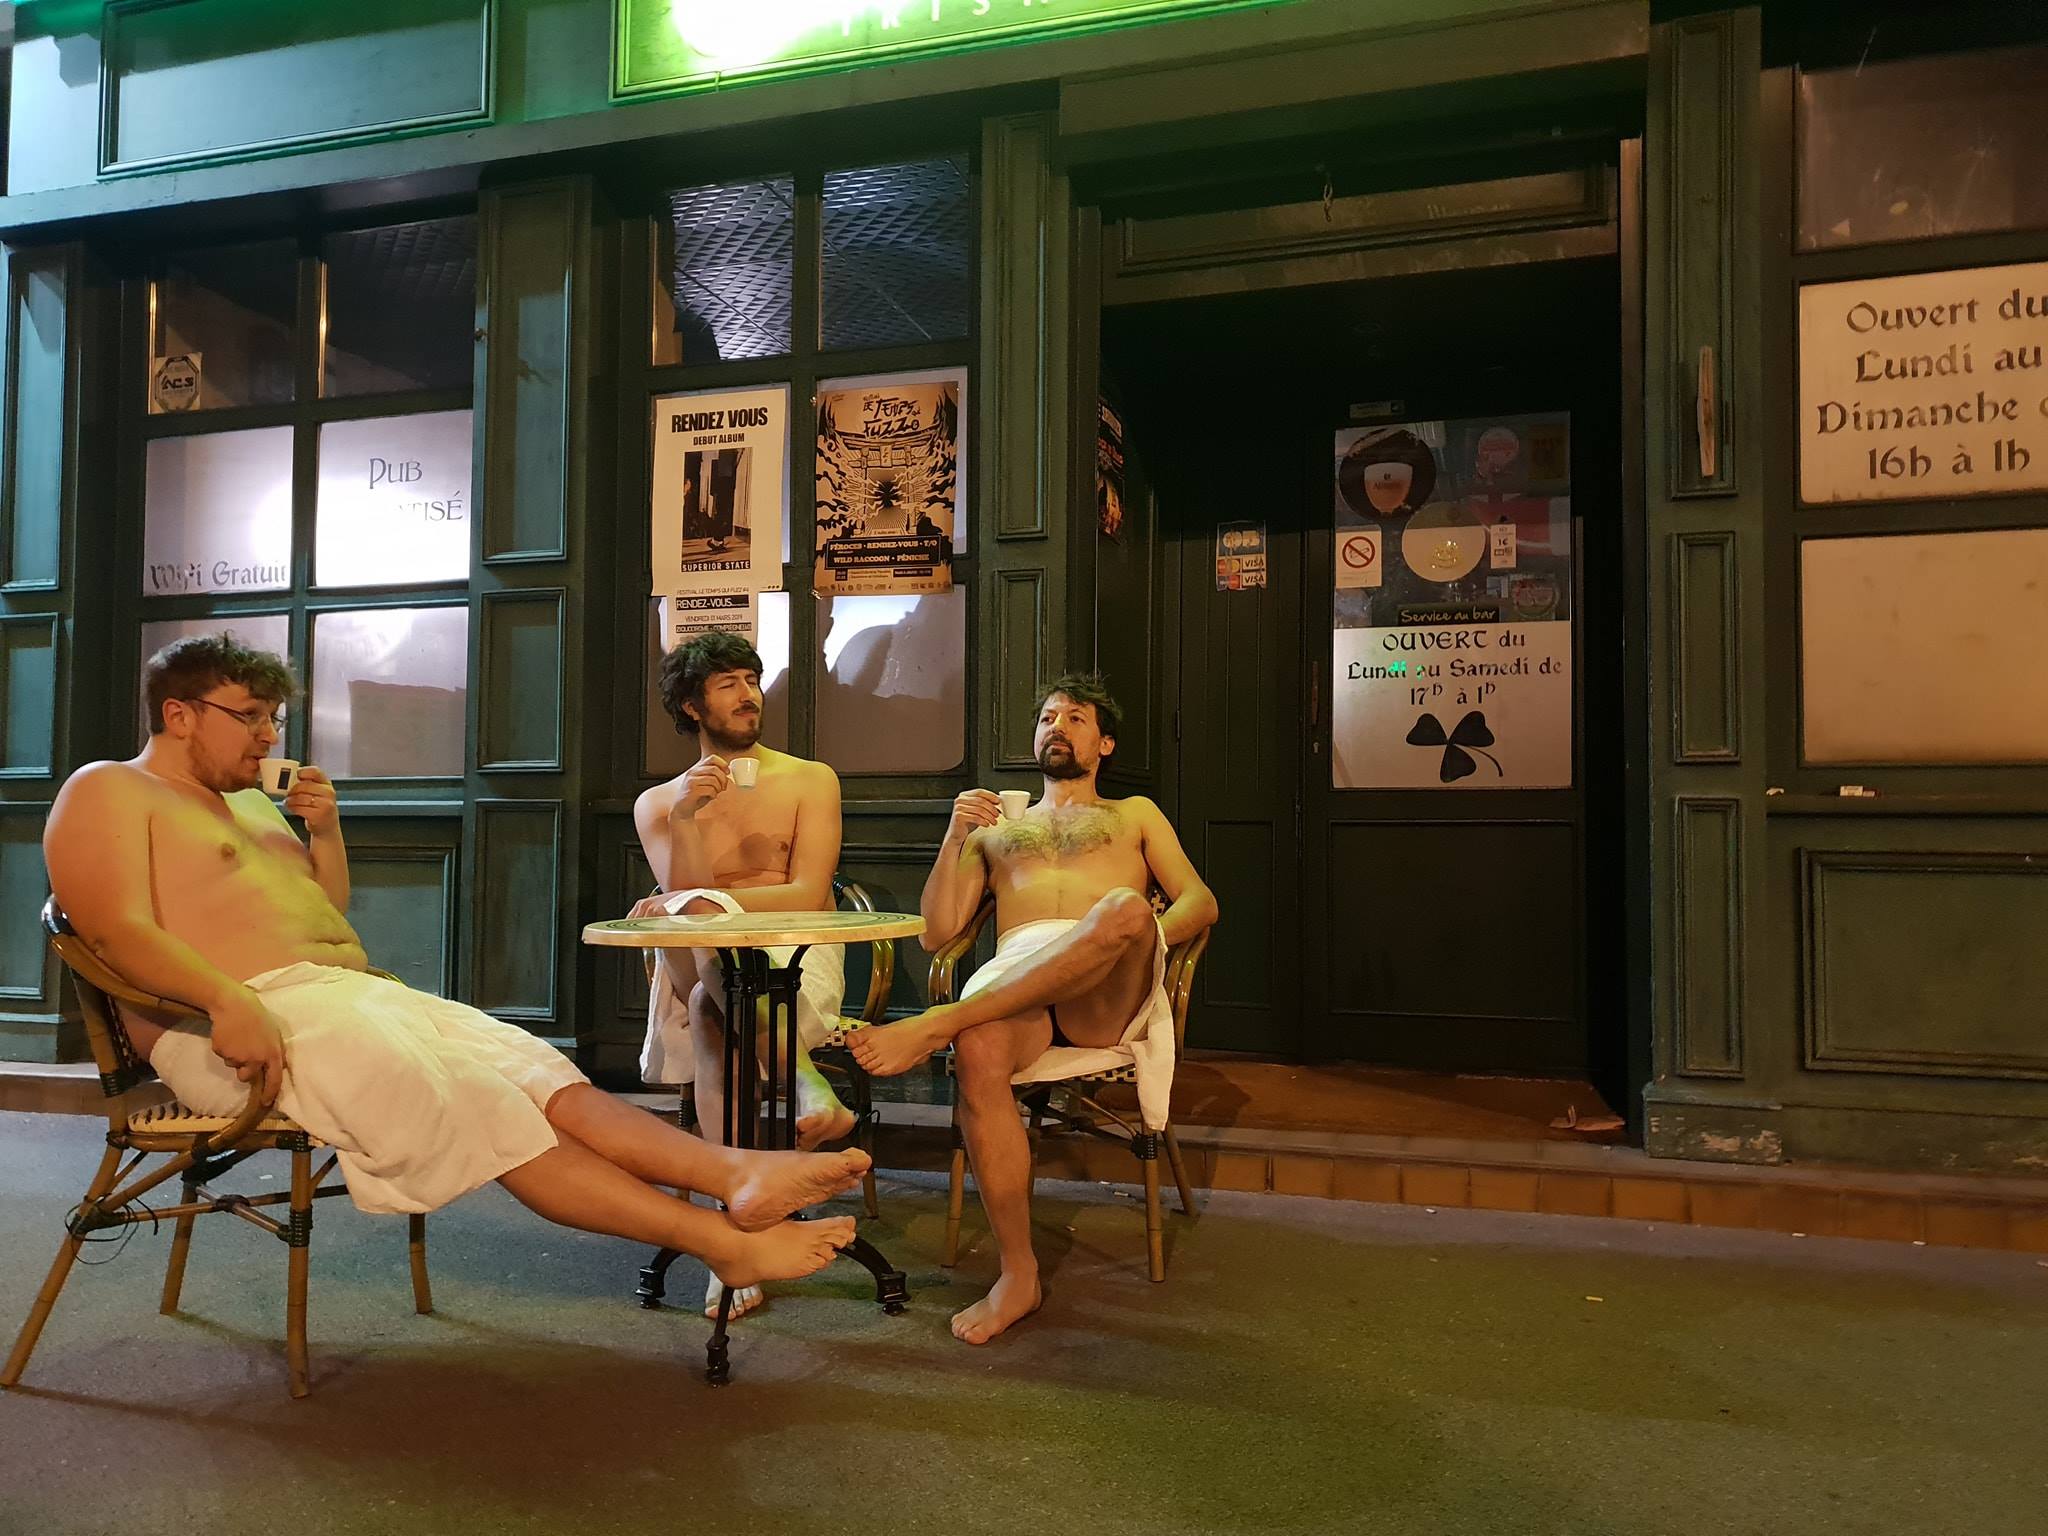 jojobeam-photo du groupe de math rock en terrasse d'un café en serviette de bain